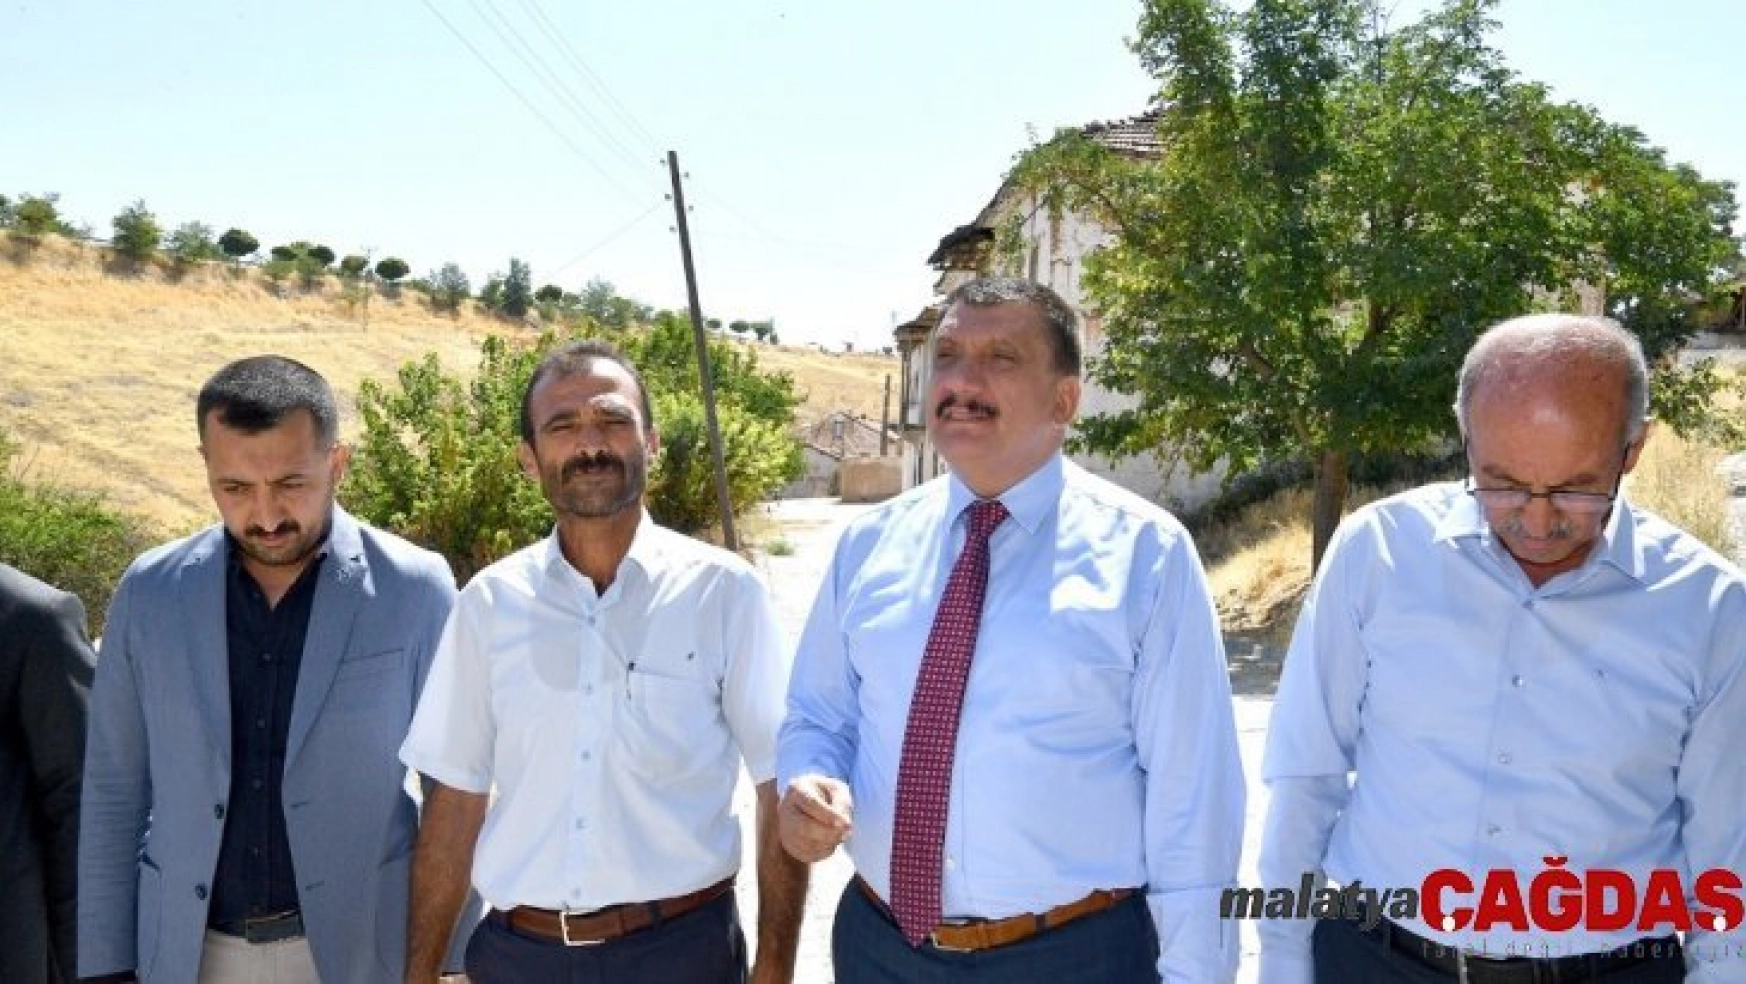 Başkan Gürkan, Akçadağ İlçesini ziyaret etti